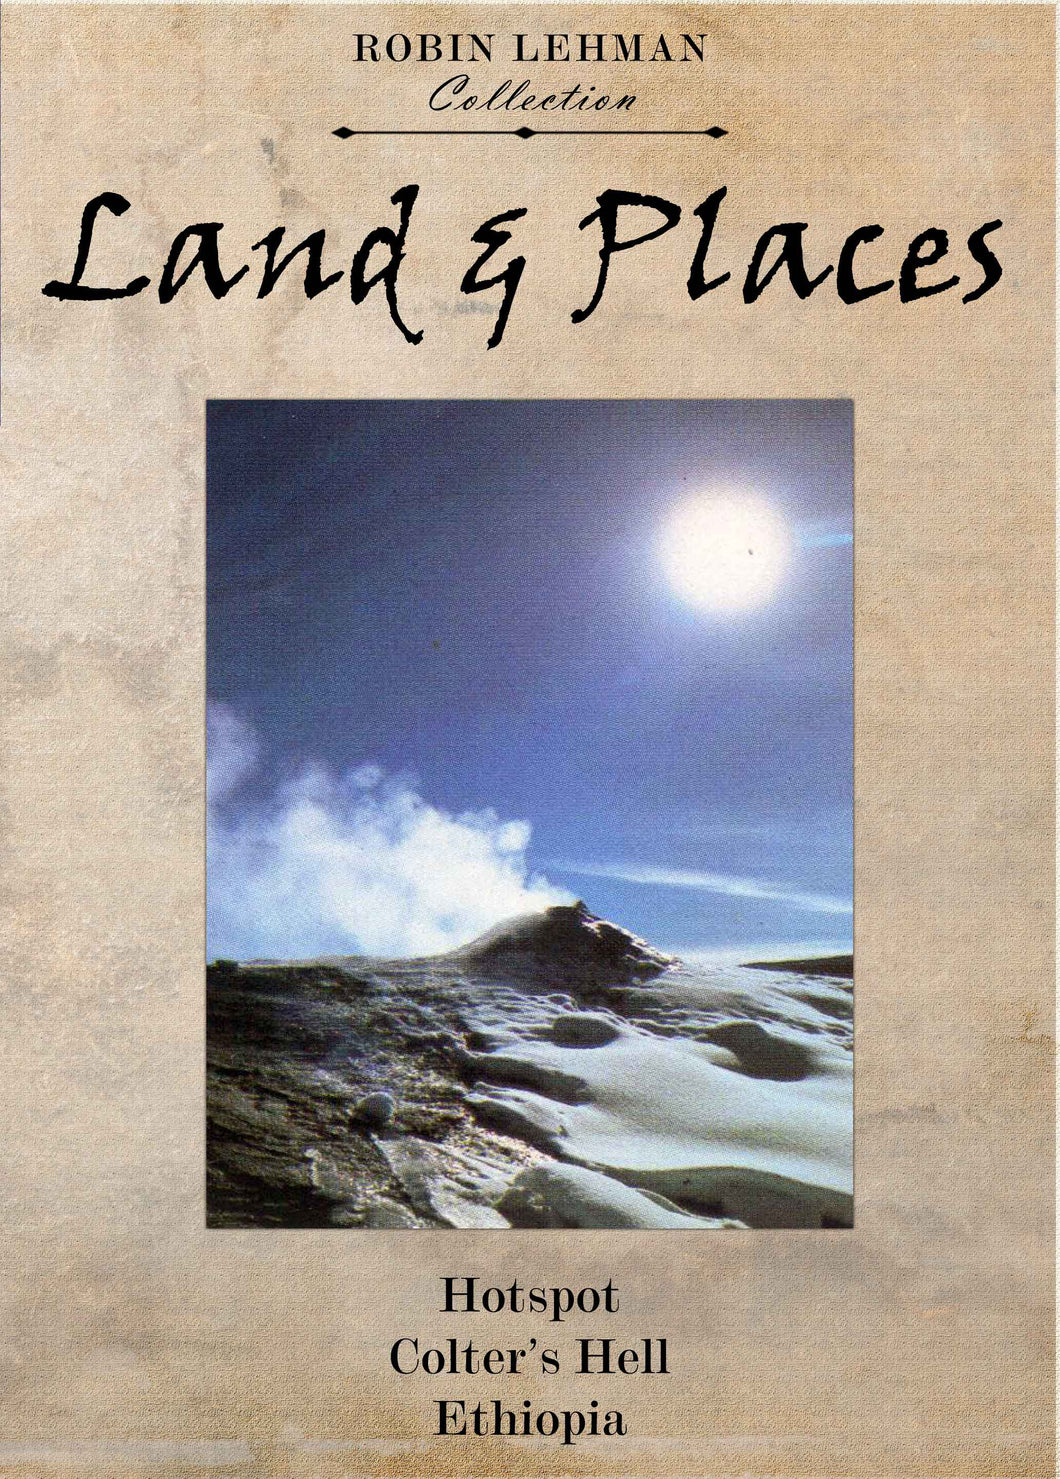 Robin Lehman's Land & Places